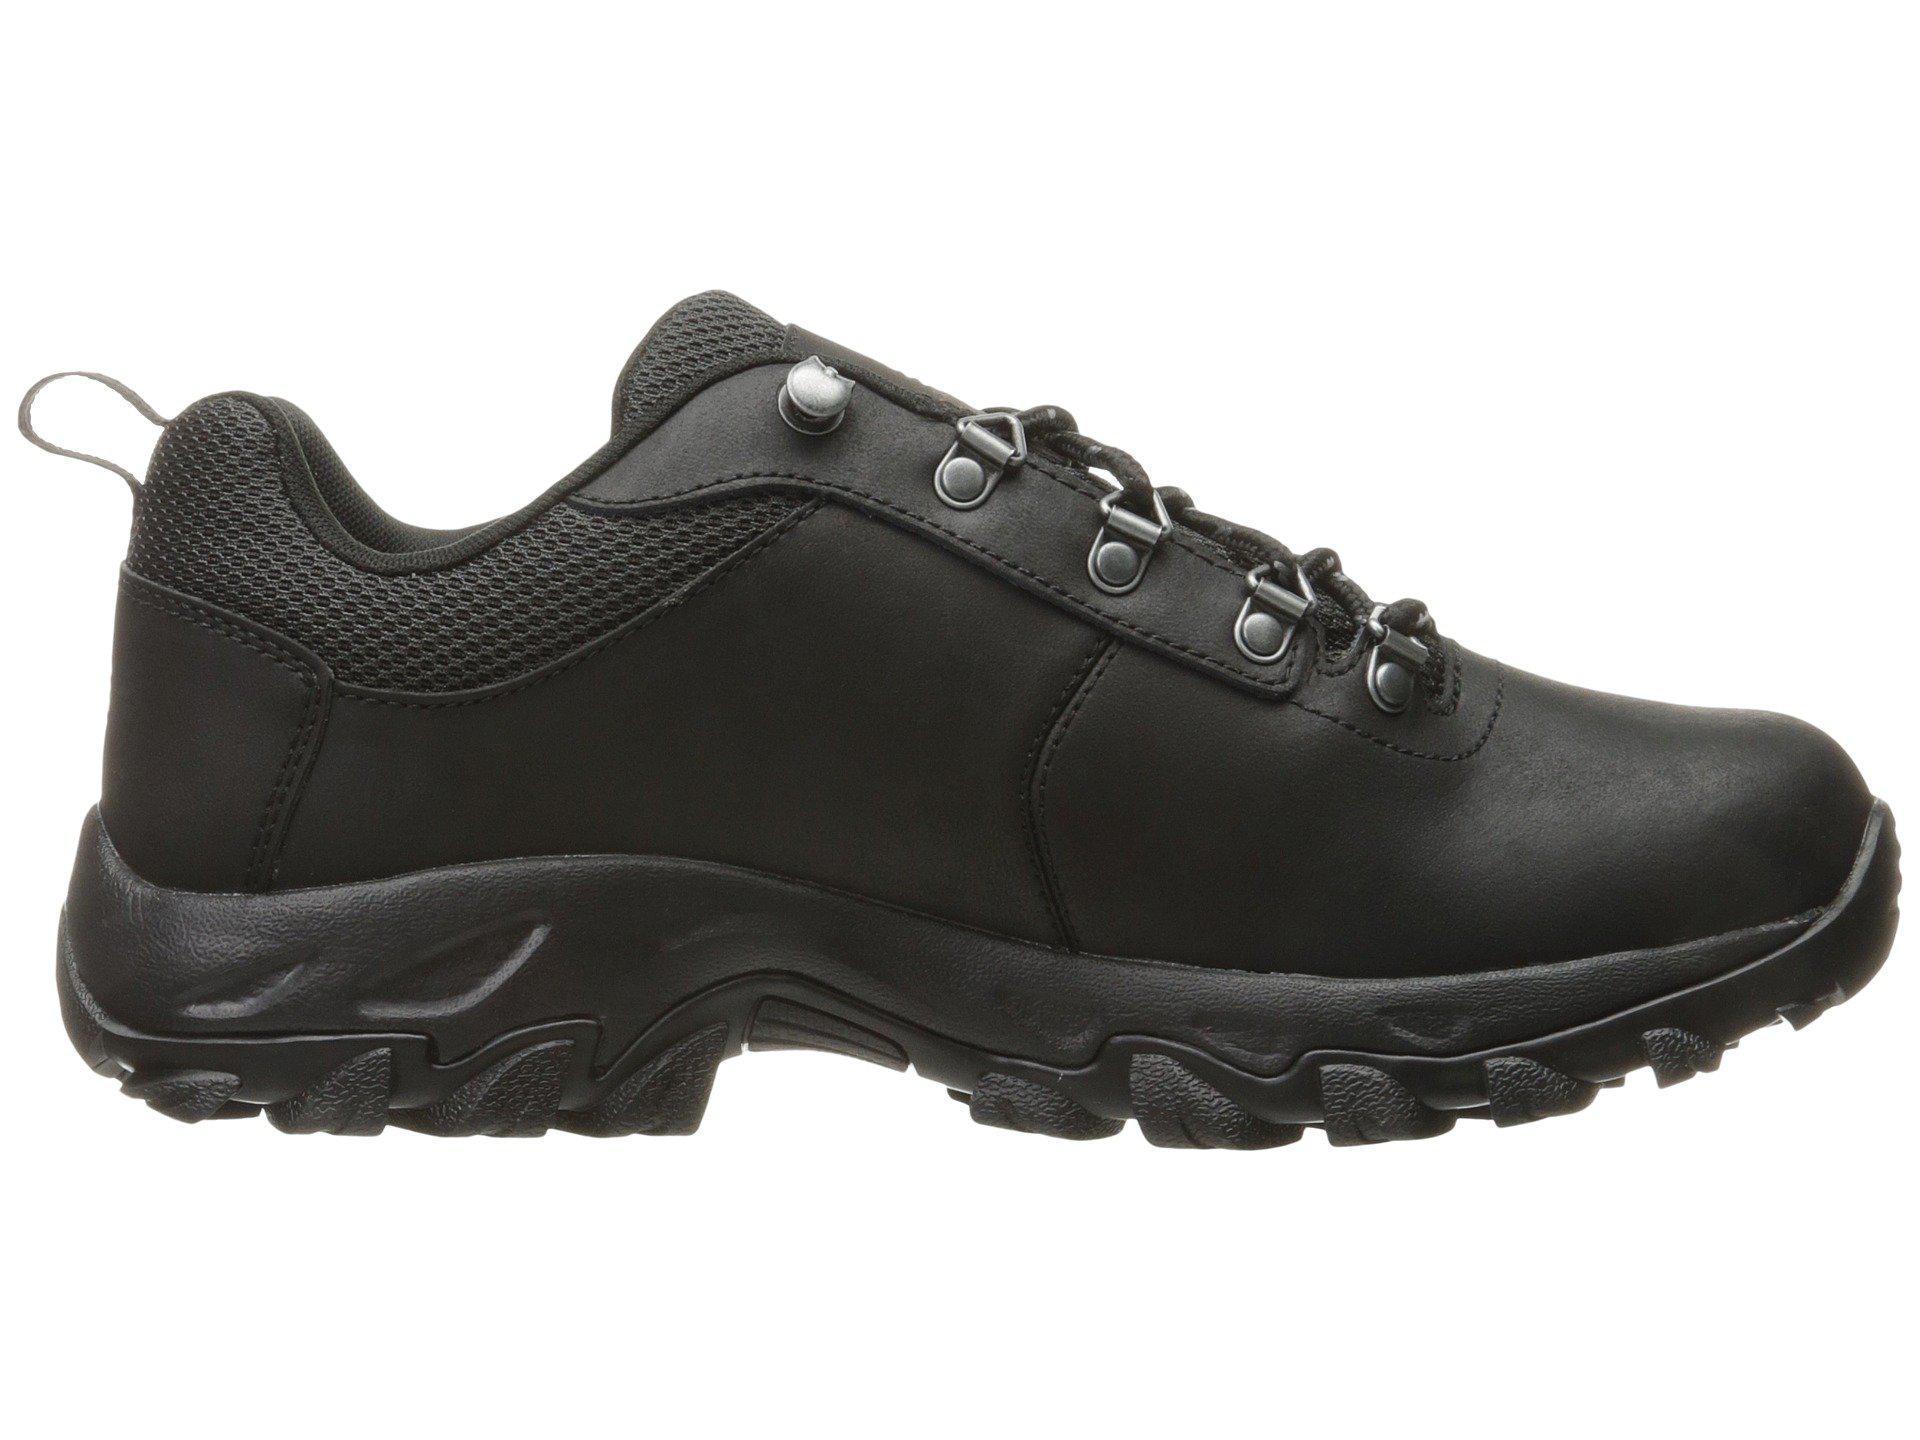 Columbia Leather Newton Ridge Plus Low Waterproof Hiking Shoe in Black ...